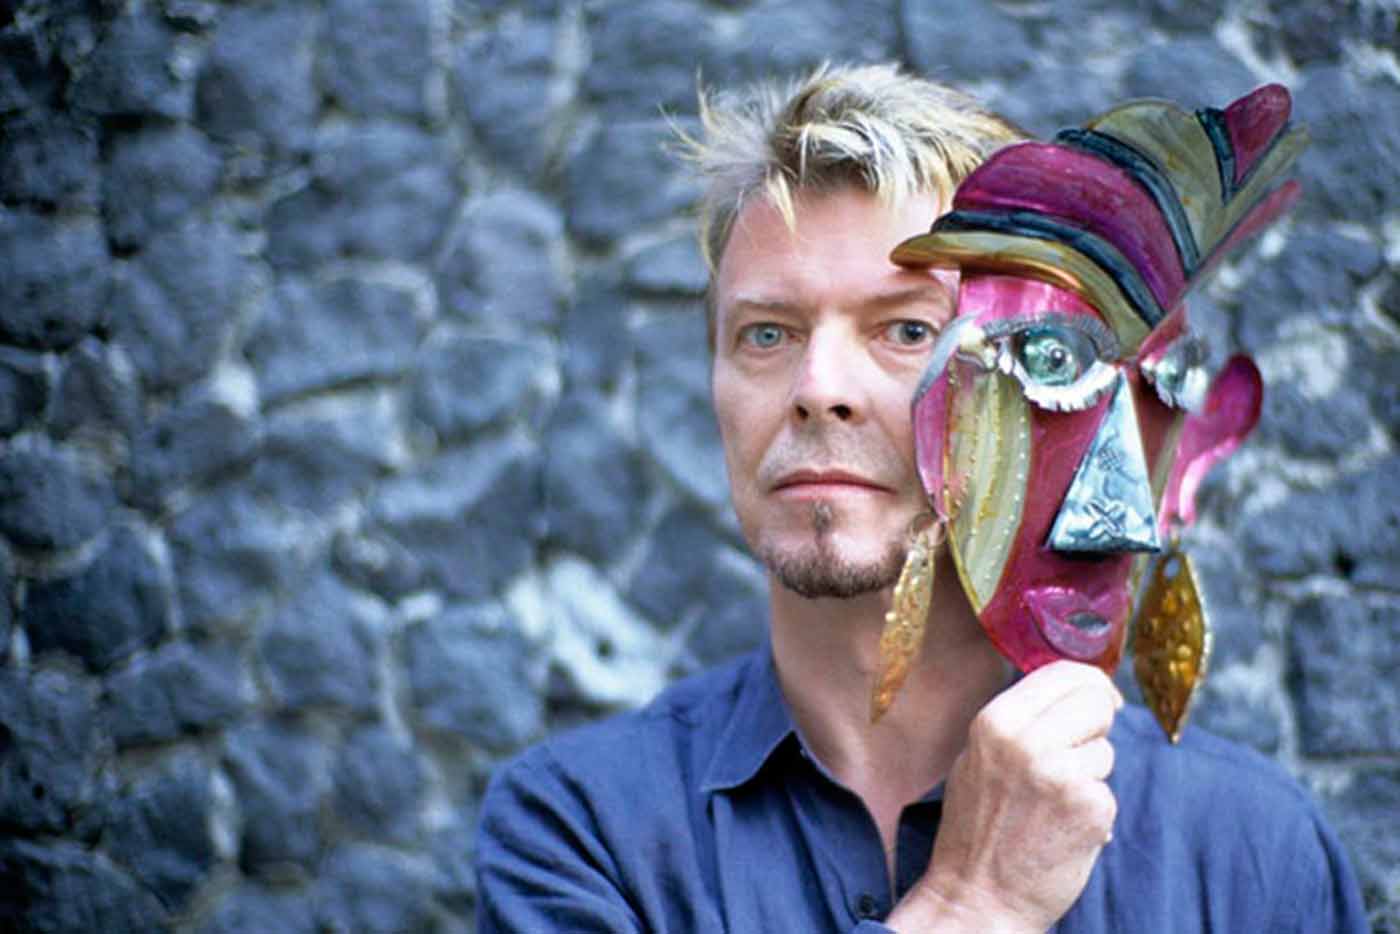 La exposición "David Bowie Is" llegará a Barcelona en mayo